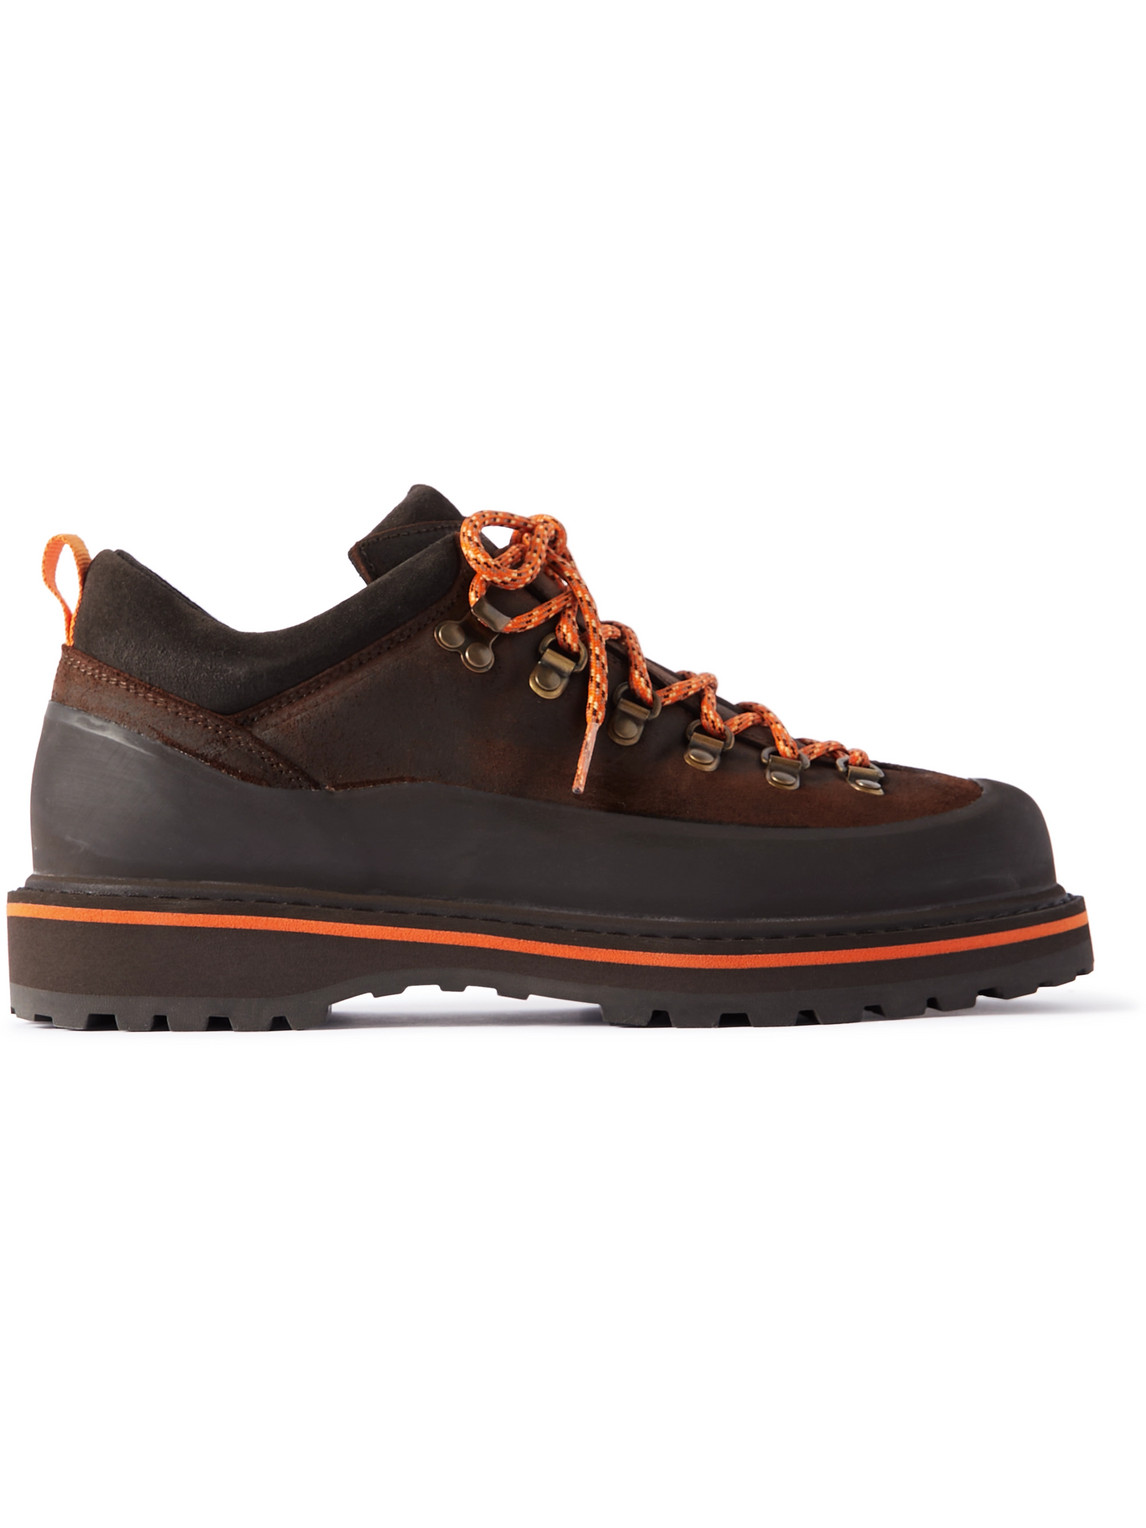 Mr P. - Diemme Roccia Basso Rubber-Trimmed Suede Hiking Boots - Men - Brown - UK 8 von Mr P.